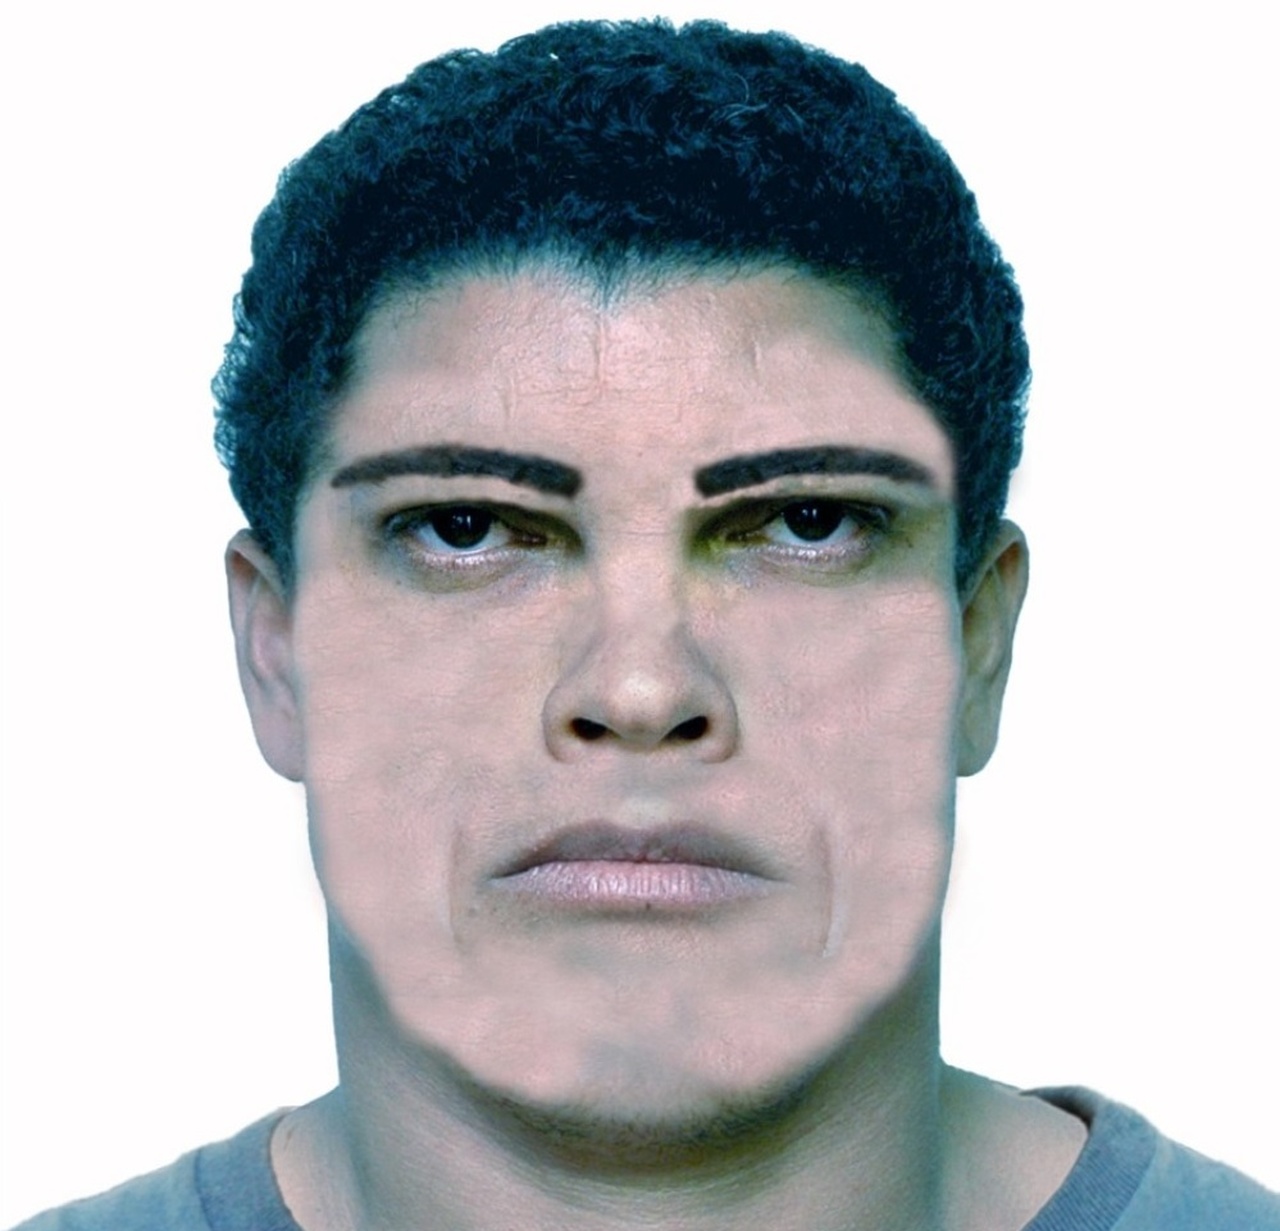 Divulgado retrato falado de estuprador que atacou jovem em Monte do Carmo